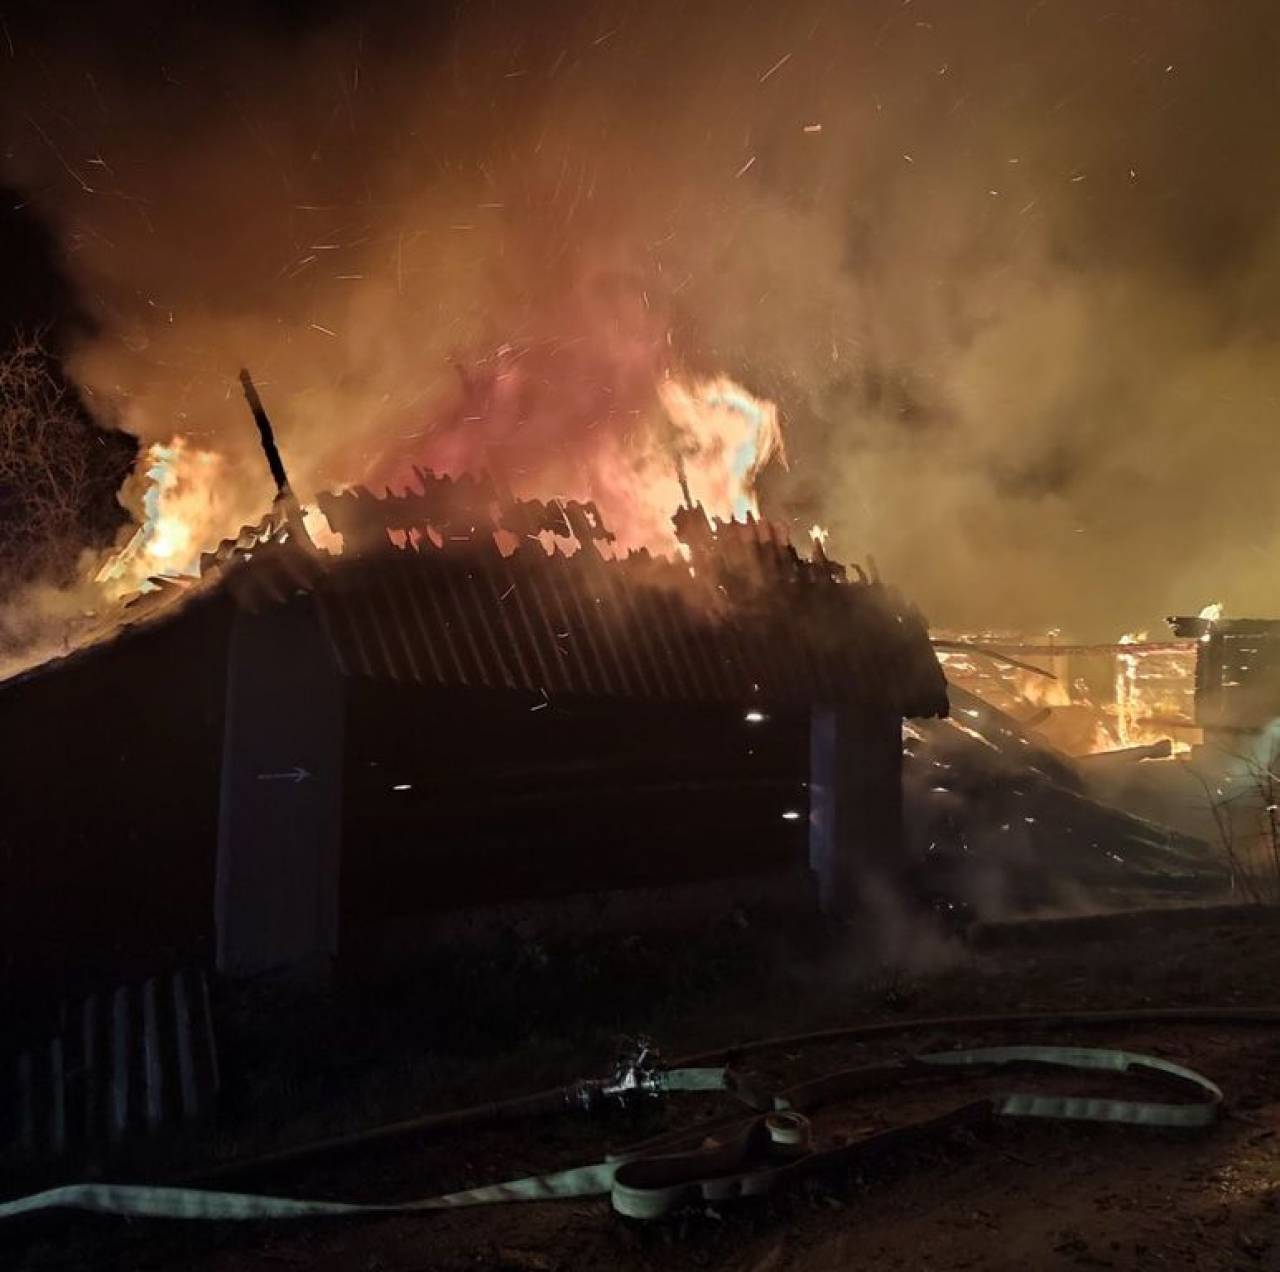 Квартира, хозпостройки и гараж горели в Гродно и регионе на выходных